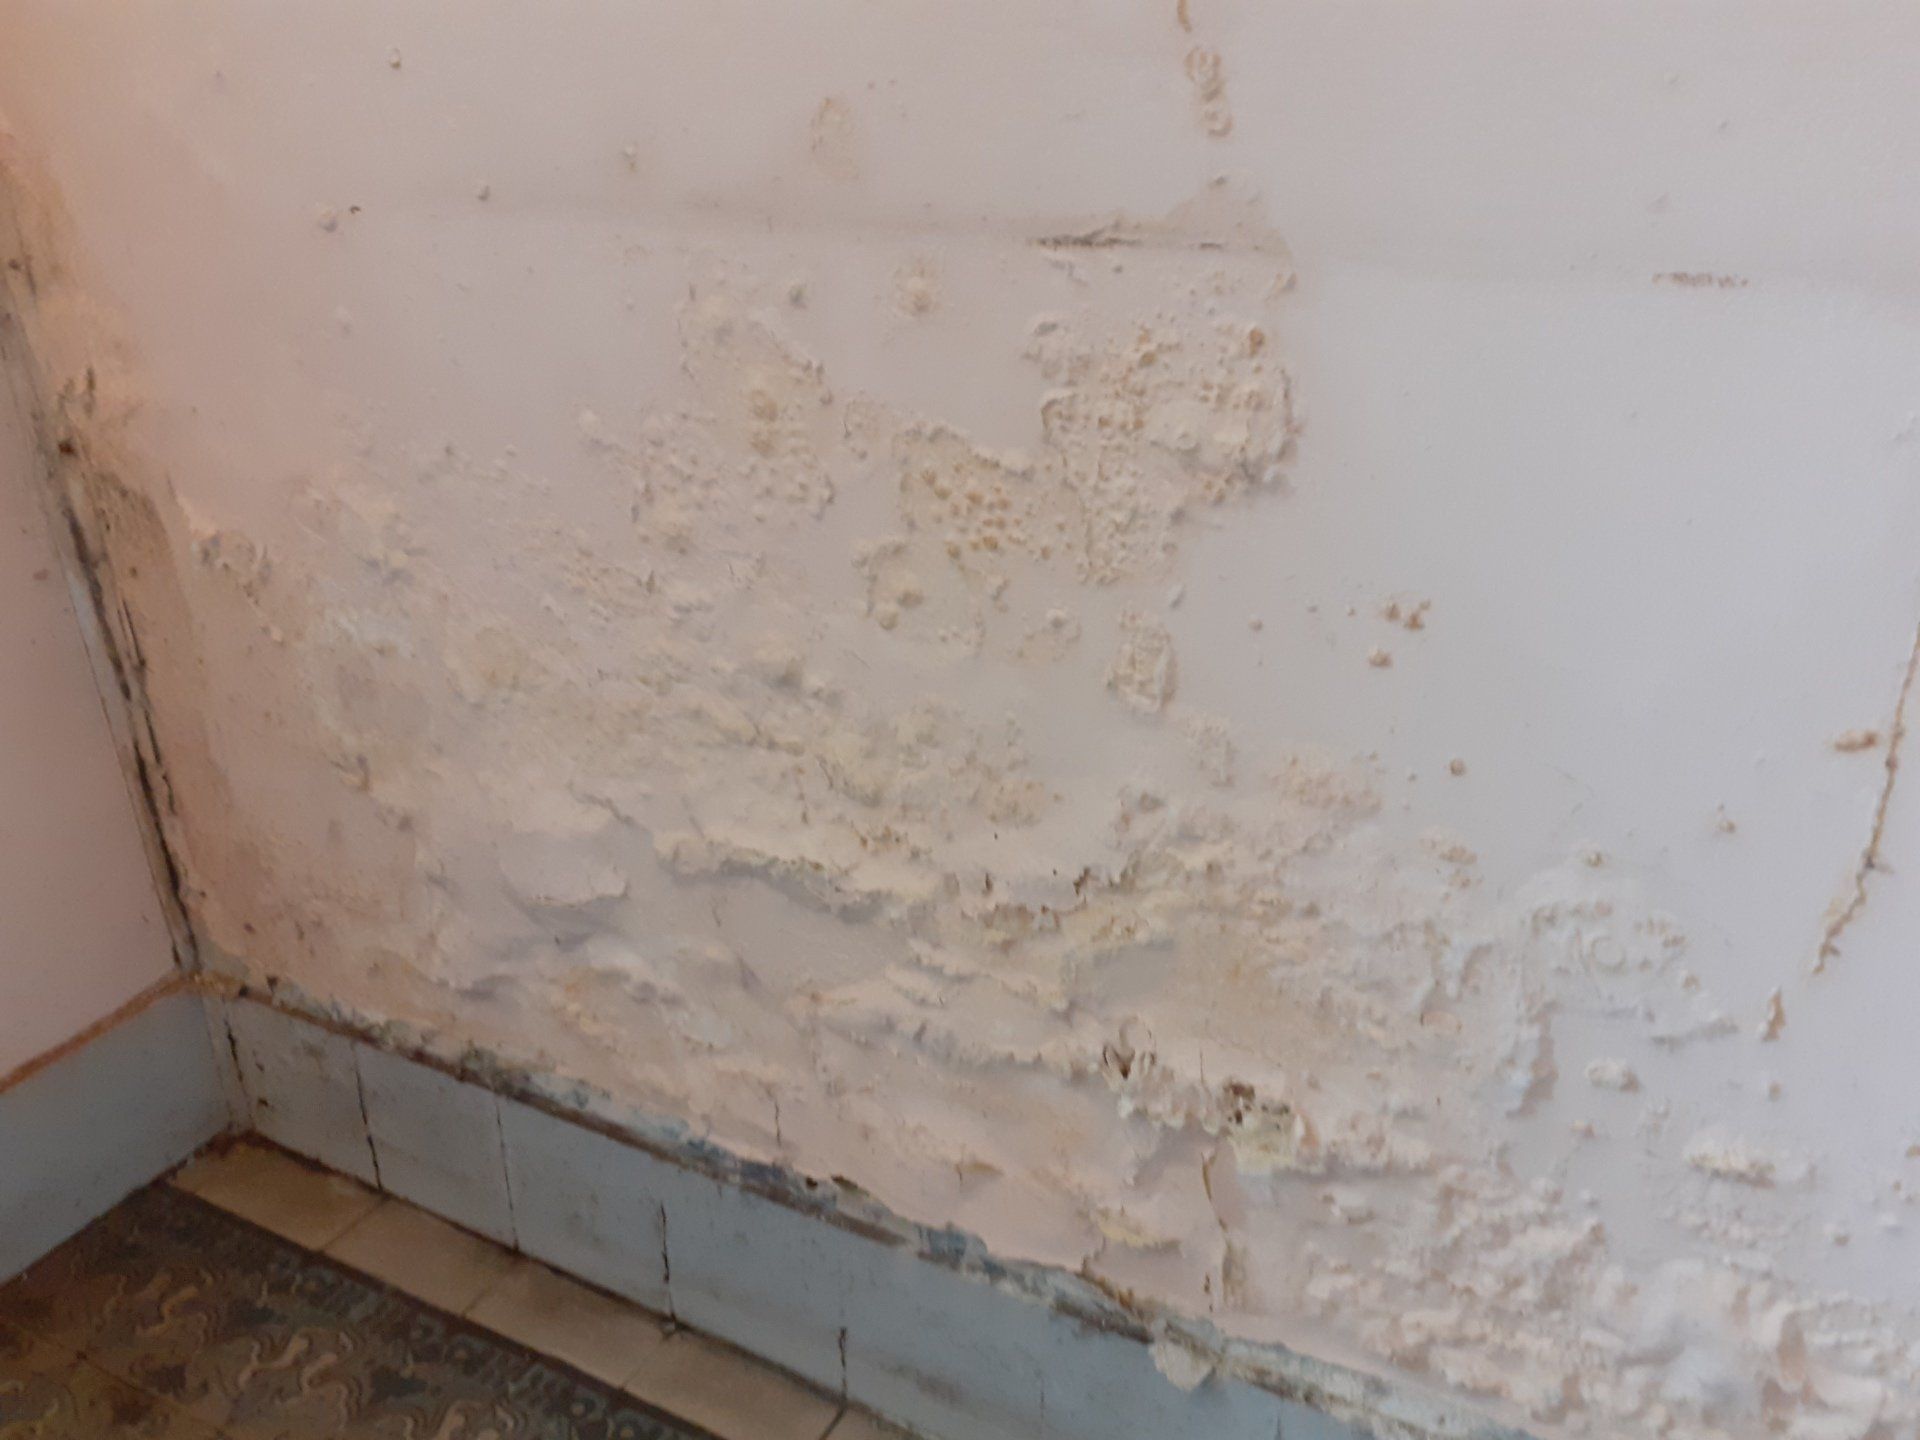 Les remontées capillaires ou remontées d'eau dans les murs provoquent des dégradations sur les enduits qui cloquent ou tombent du mur humide.